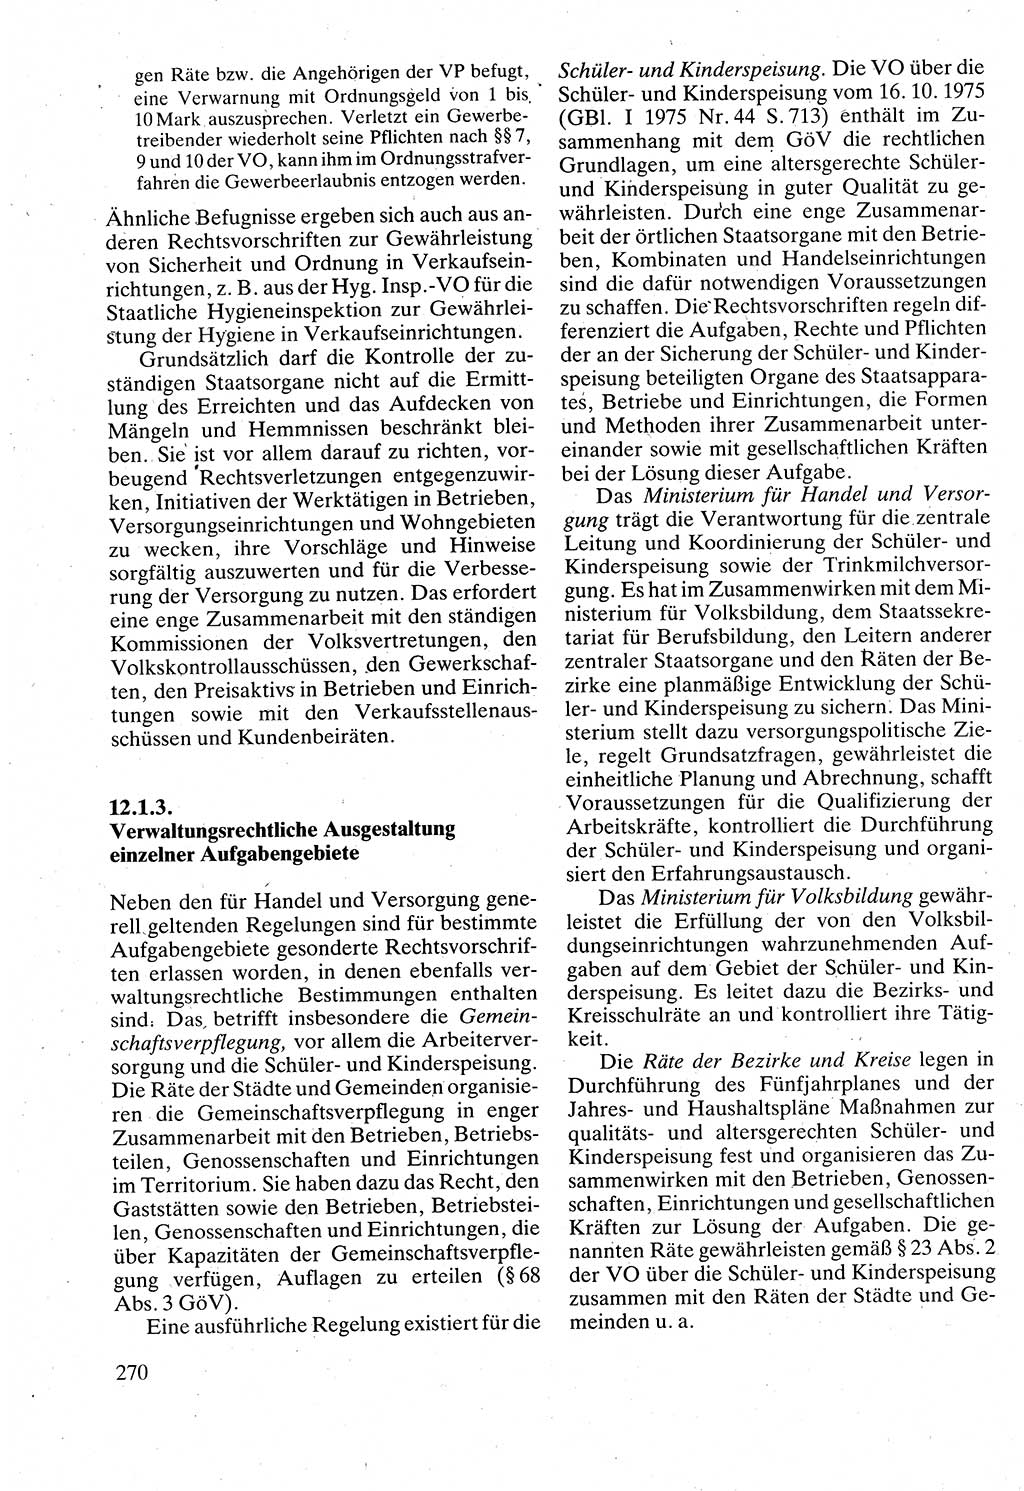 Verwaltungsrecht [Deutsche Demokratische Republik (DDR)], Lehrbuch 1988, Seite 270 (Verw.-R. DDR Lb. 1988, S. 270)